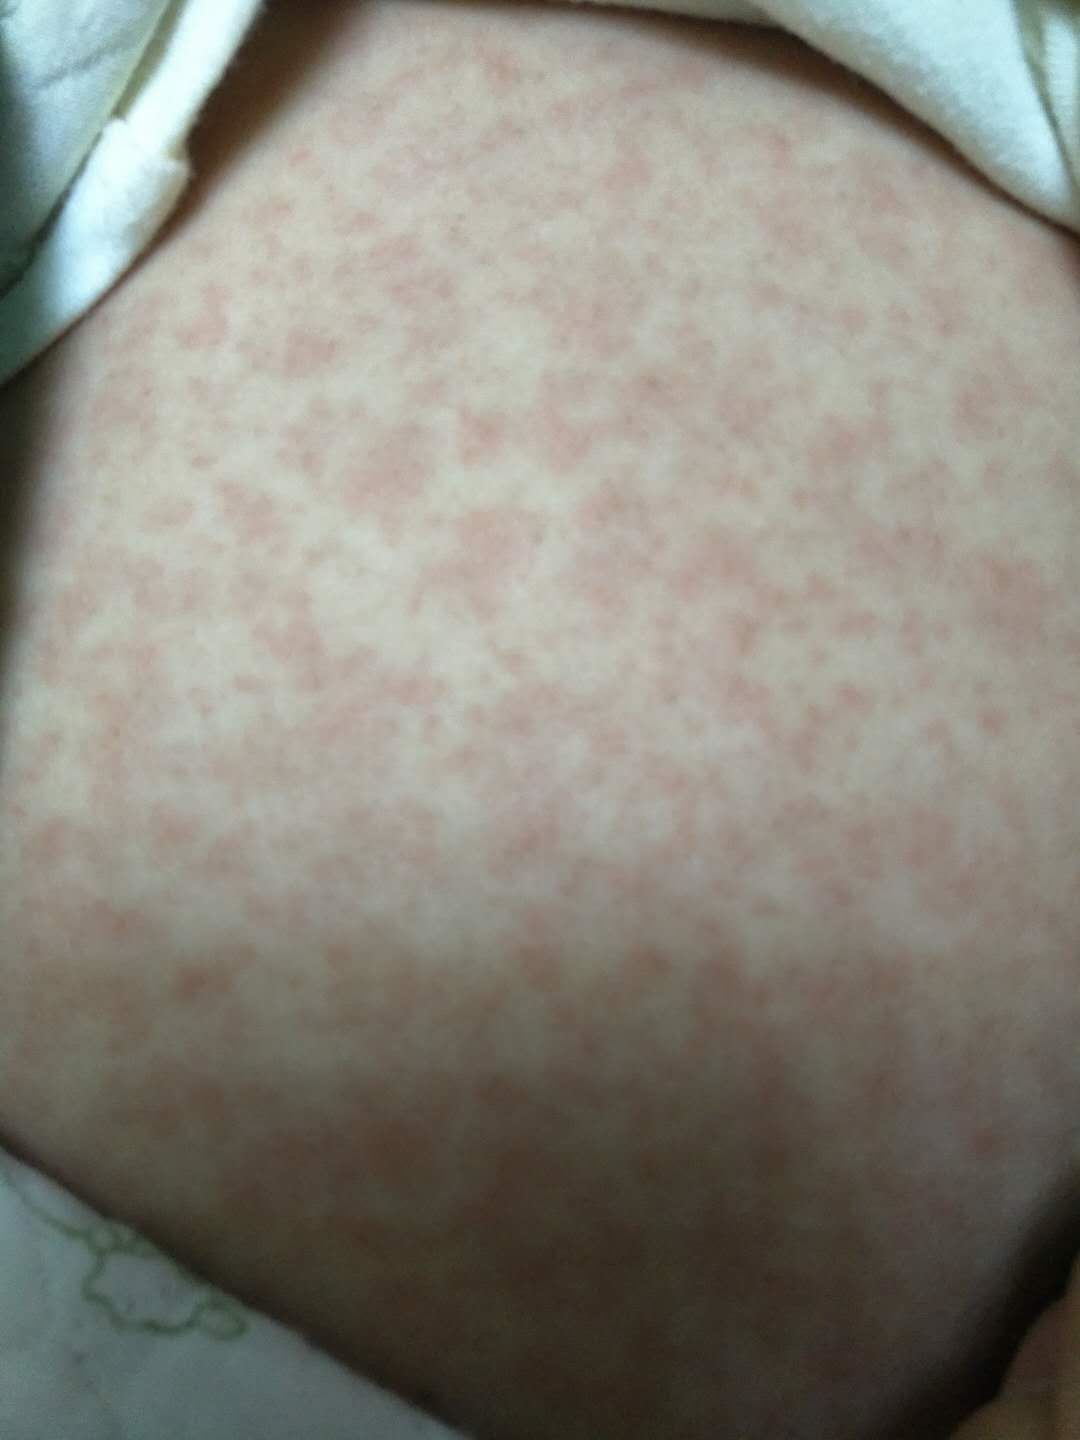 宝妈群里热议的幼儿急疹是啥?满身的疹子是正常发病过程吗?